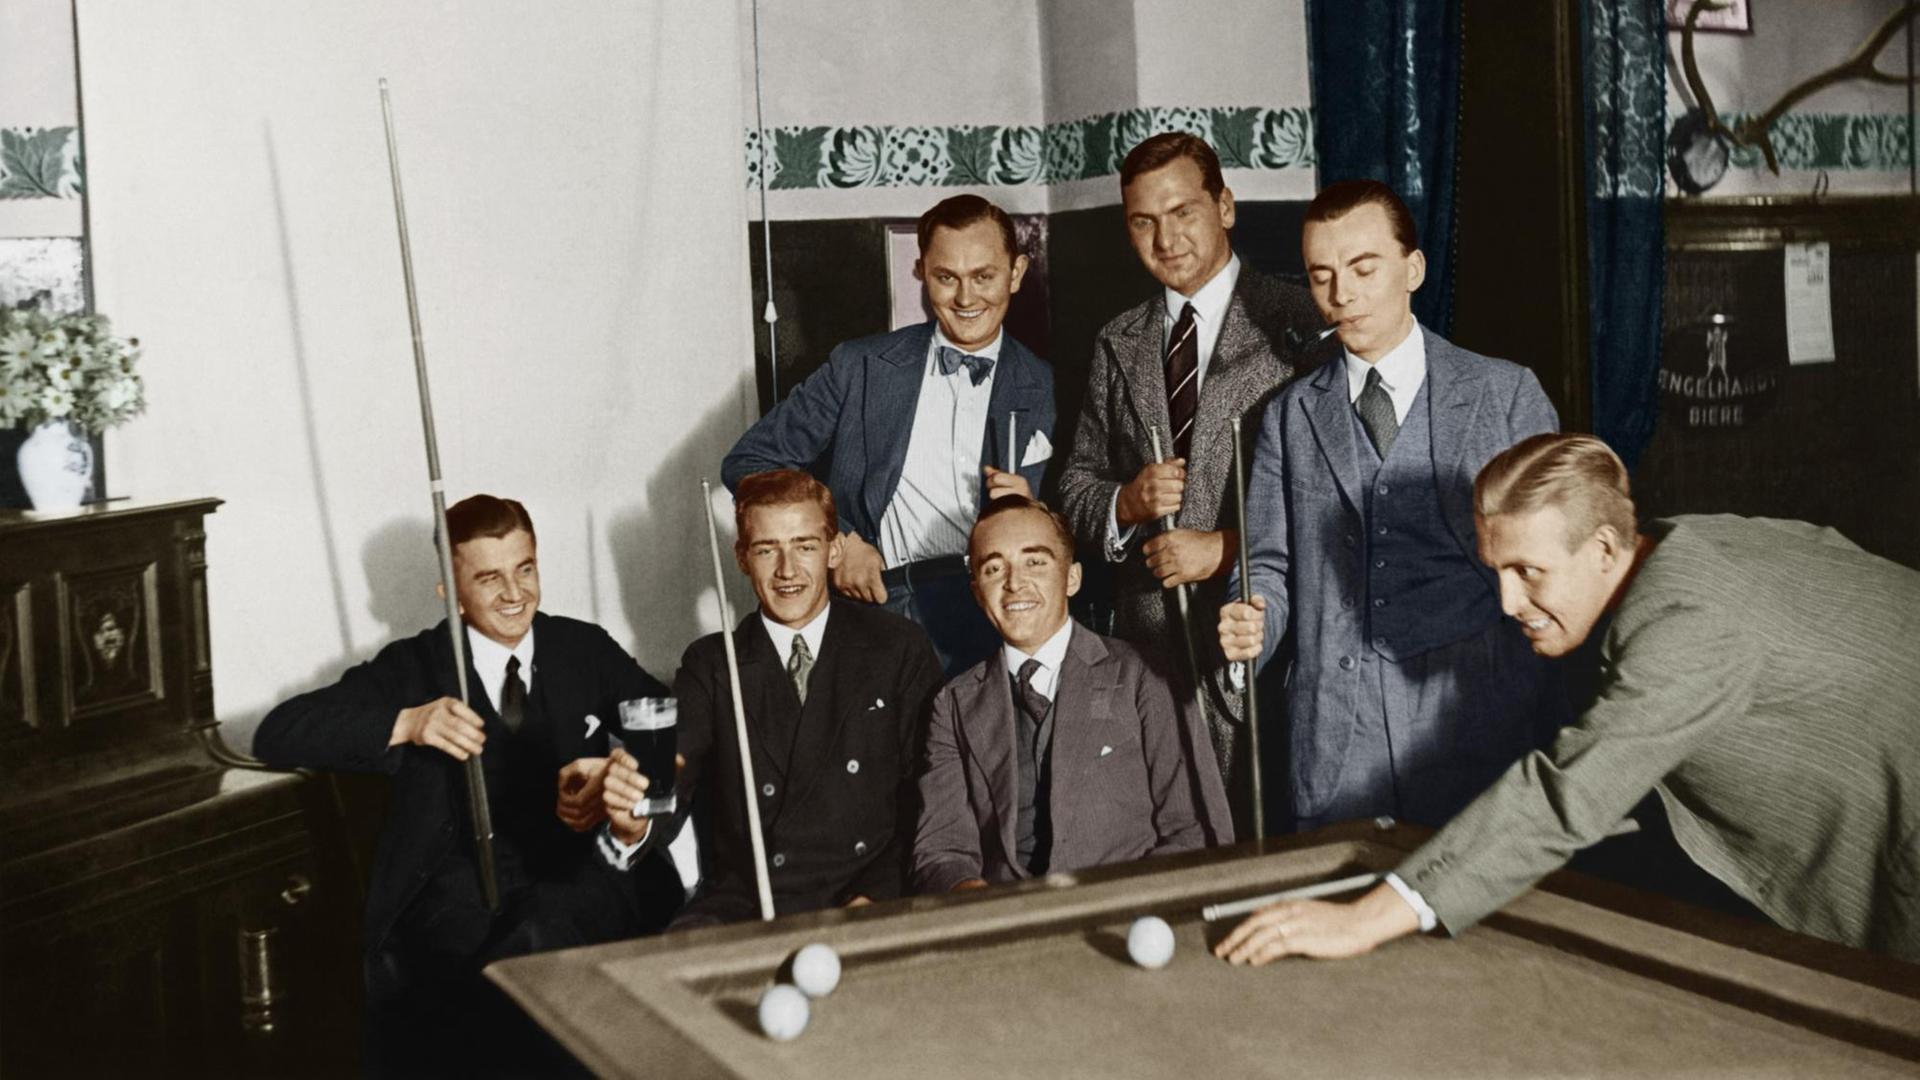 Herrenrunde beim Billard, Foto 1920er Jahre, digital koloriert